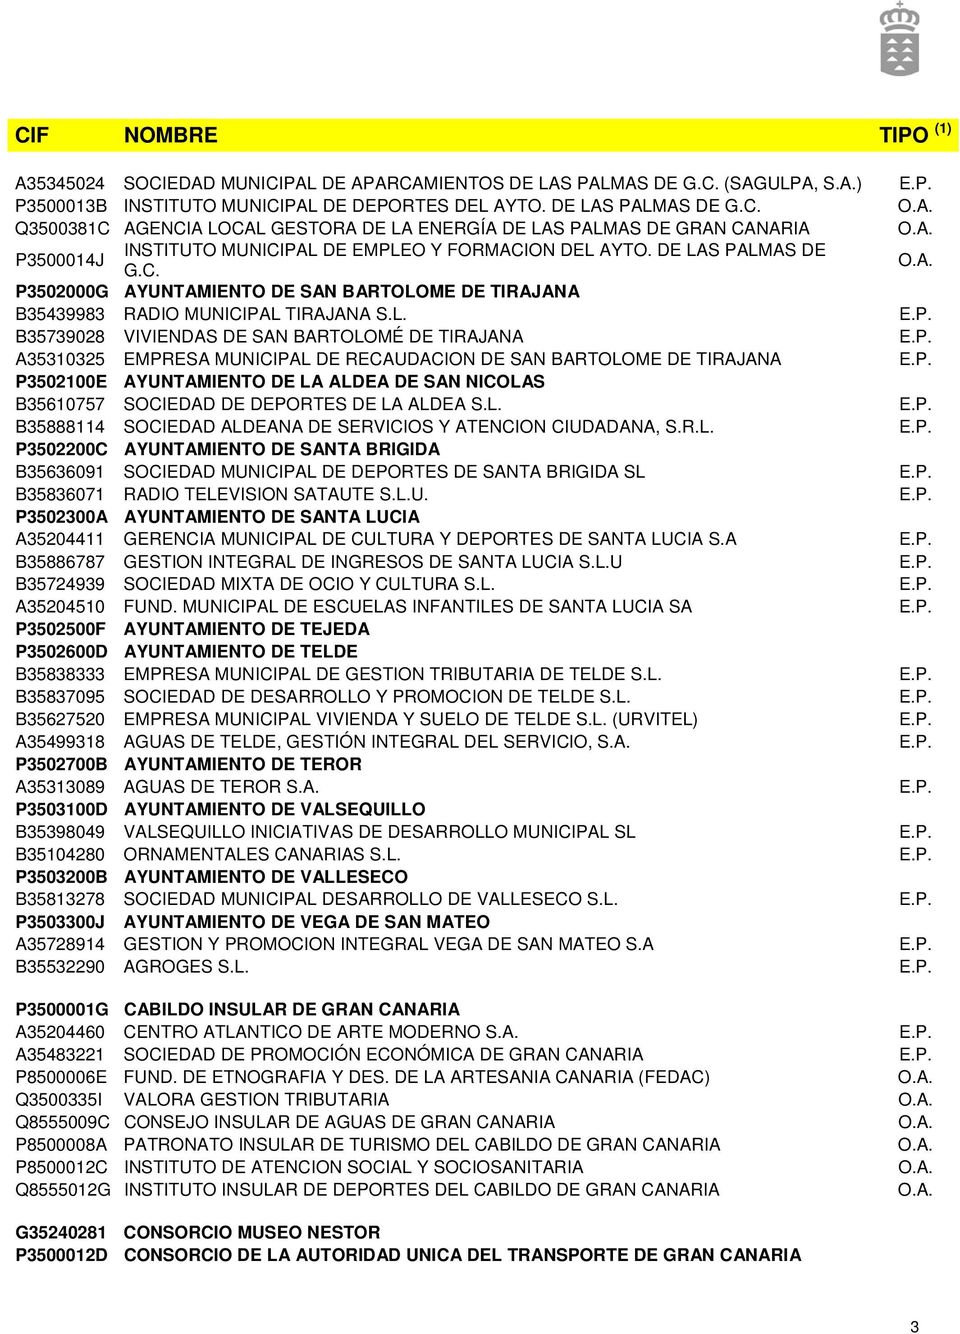 MUNICIPAL DE RECAUDACION DE SAN BARTOLOME DE TIRAJANA P3502100E AYUNTAMIENTO DE LA ALDEA DE SAN NICOLAS B35610757 SOCIEDAD DE DEPORTES DE LA ALDEA S.L. B35888114 SOCIEDAD ALDEANA DE SERVICIOS Y ATENCION CIUDADANA, S.